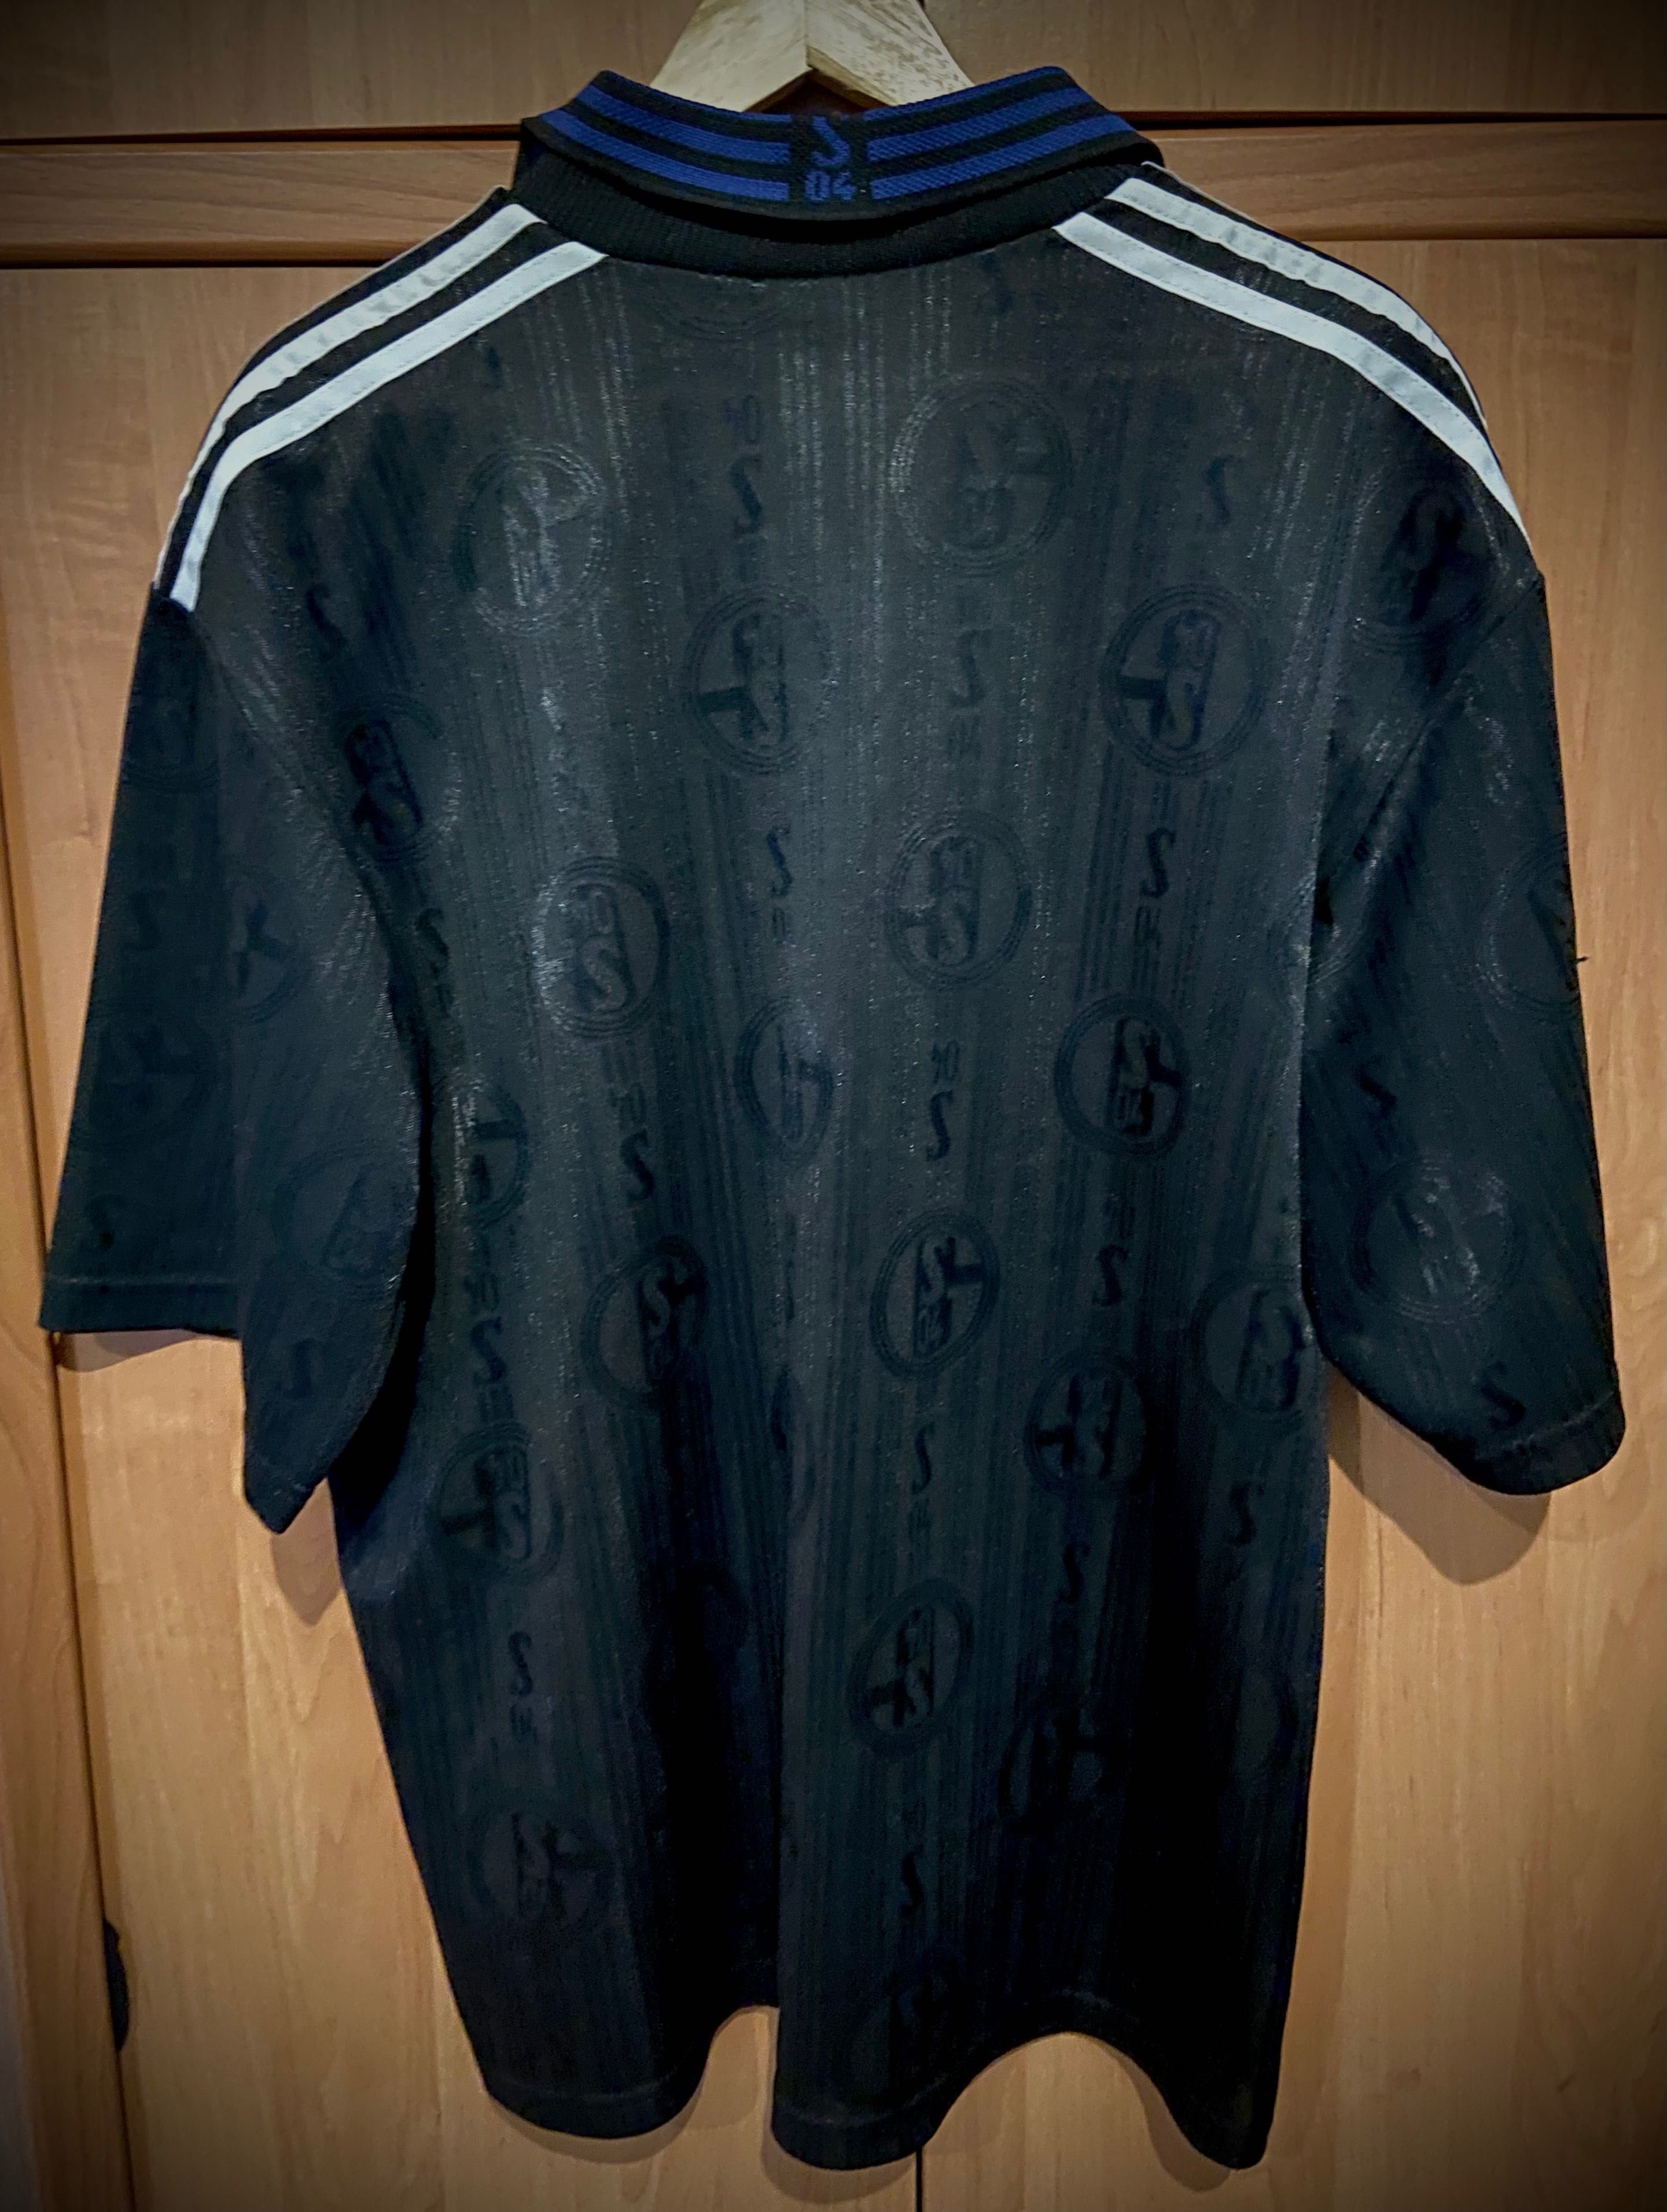 Adidas Koszulka piłkarska Schalke 04 z lat 90 XL